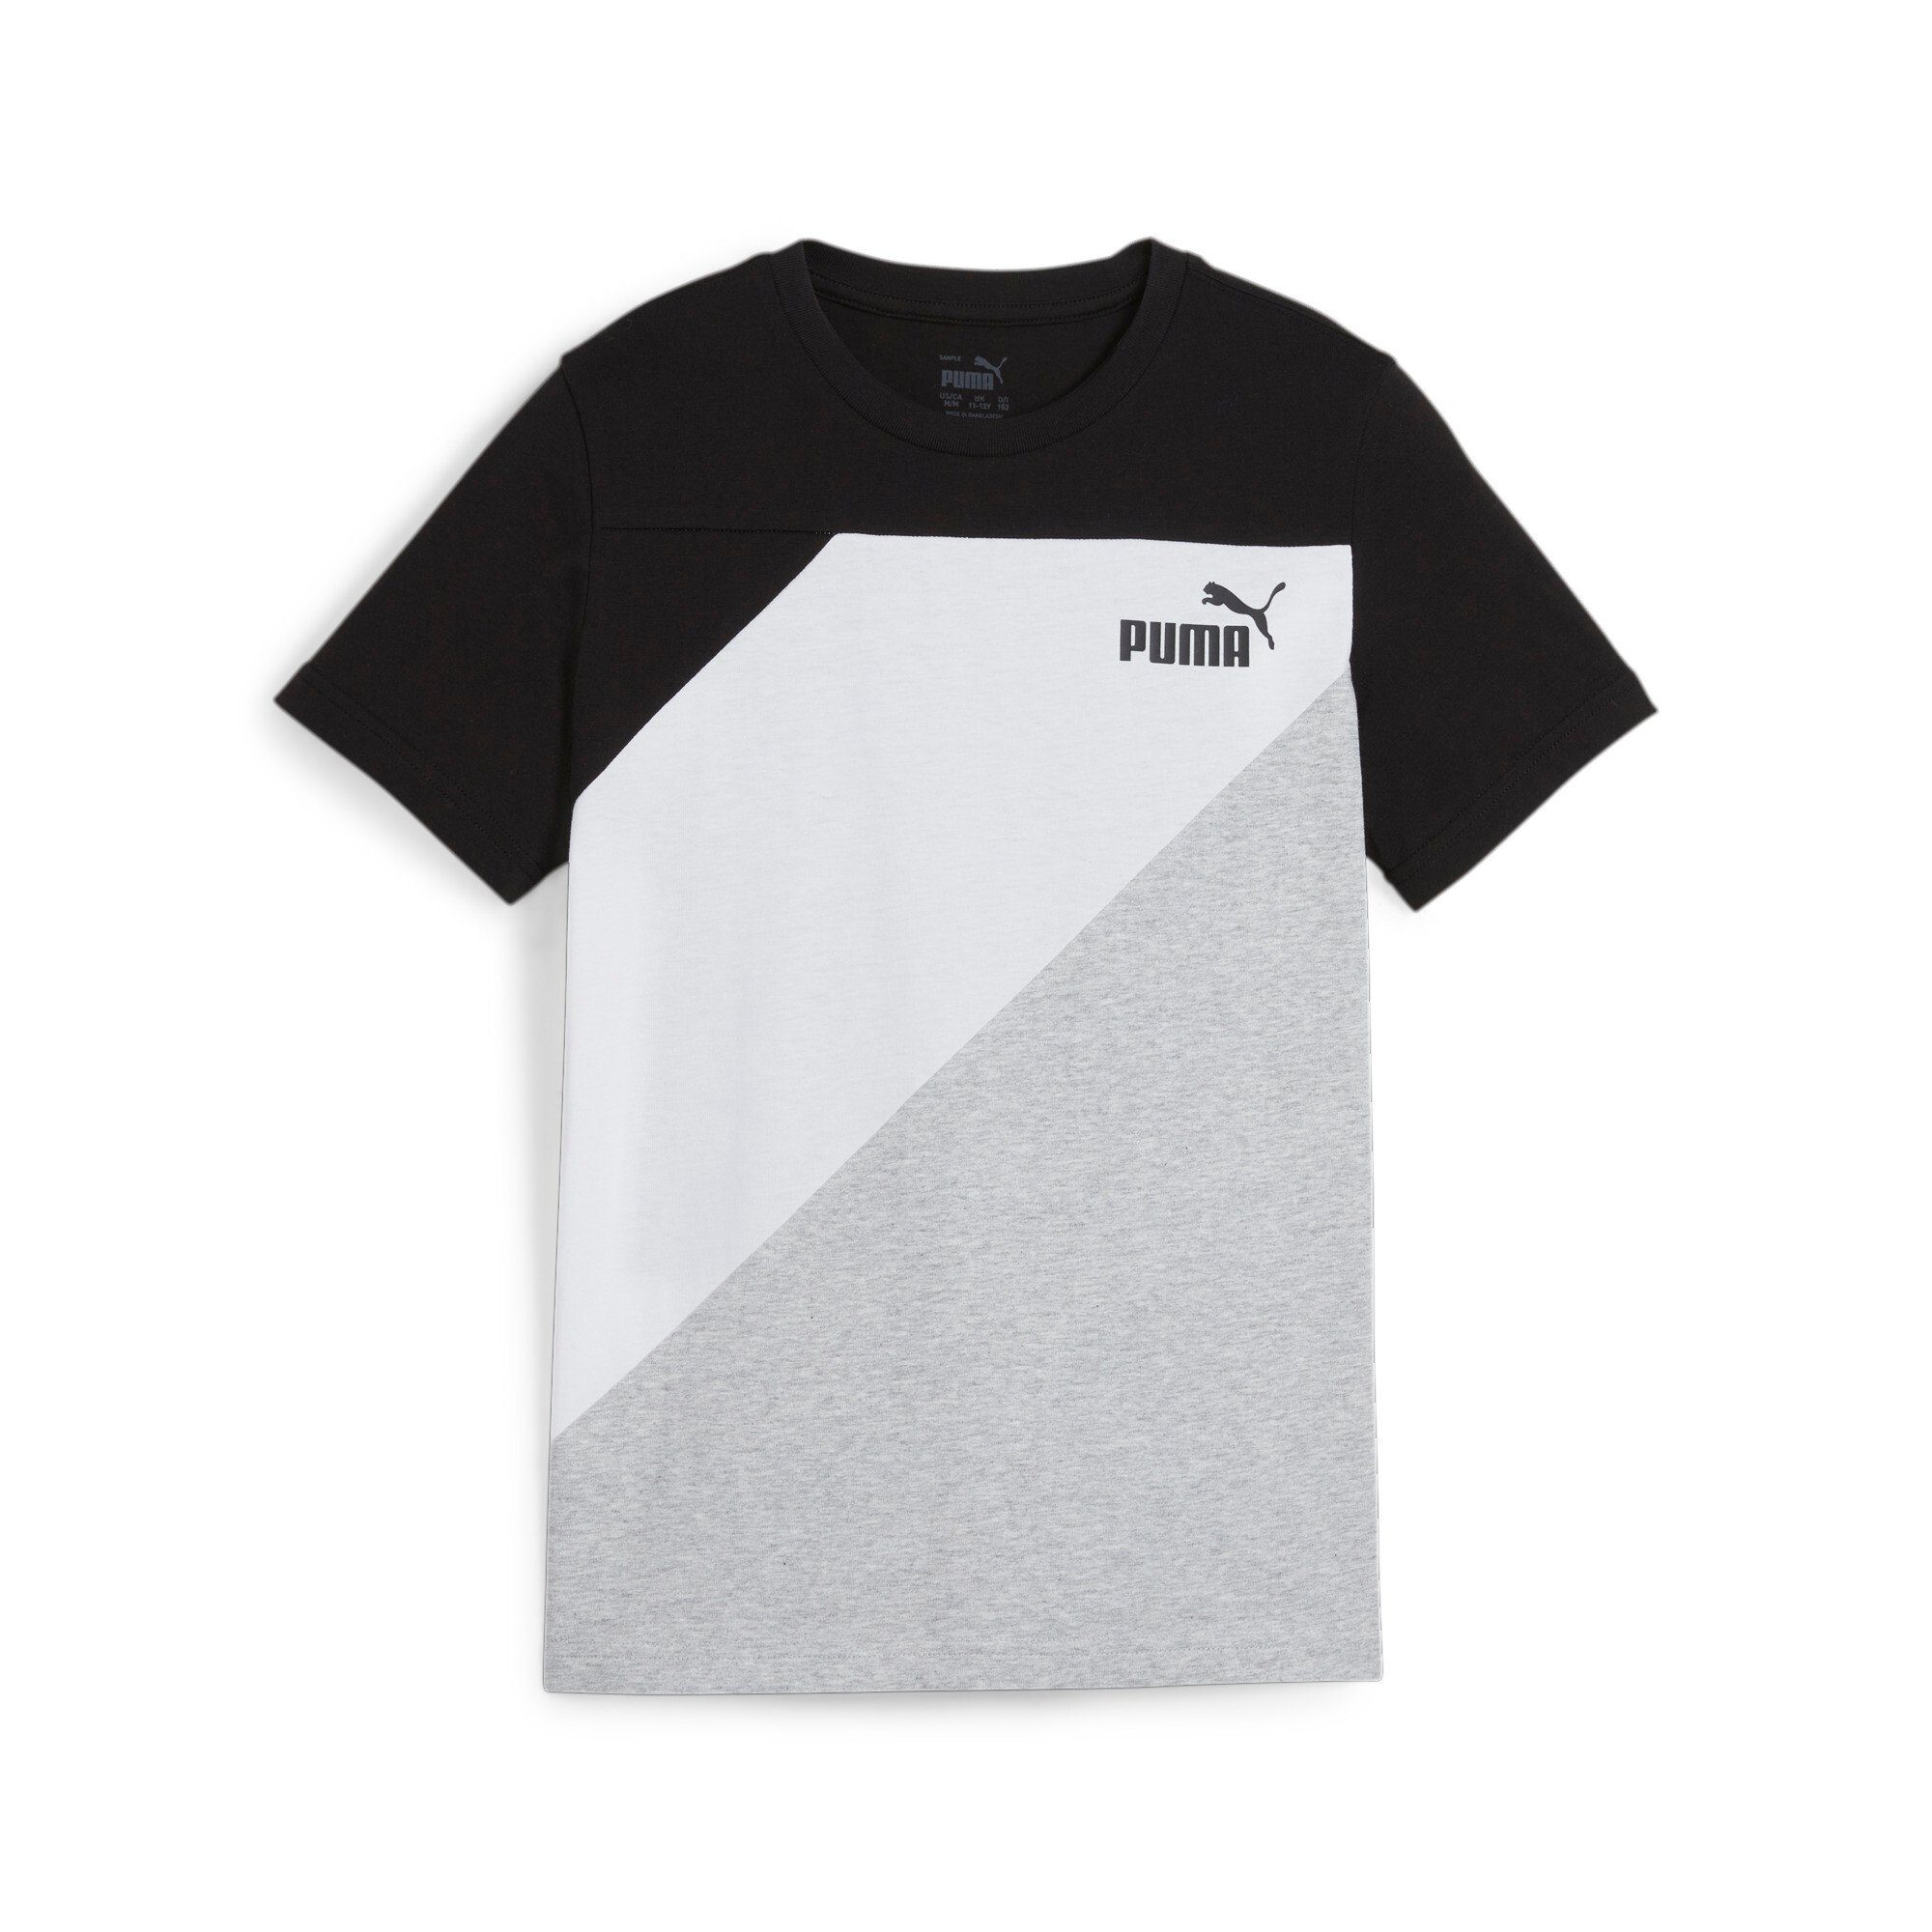 Puma T-shirt zwart wit Katoen Ronde hals Logo 128